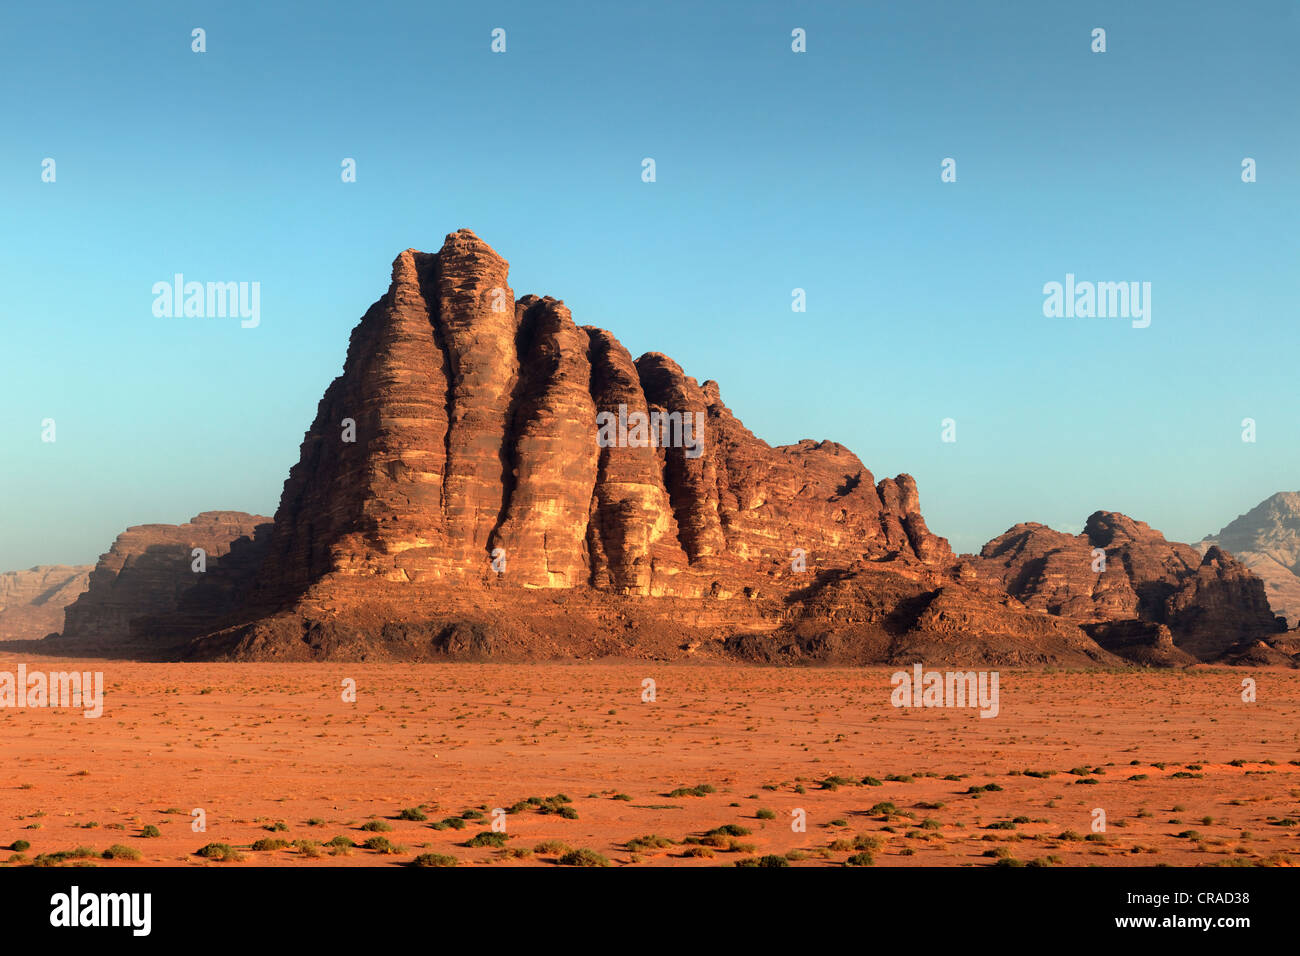 Les sept piliers de la sagesse, montagne, plaine, désert, Wadi Rum, Royaume hachémite de Jordanie, Moyen-Orient, Asie Banque D'Images